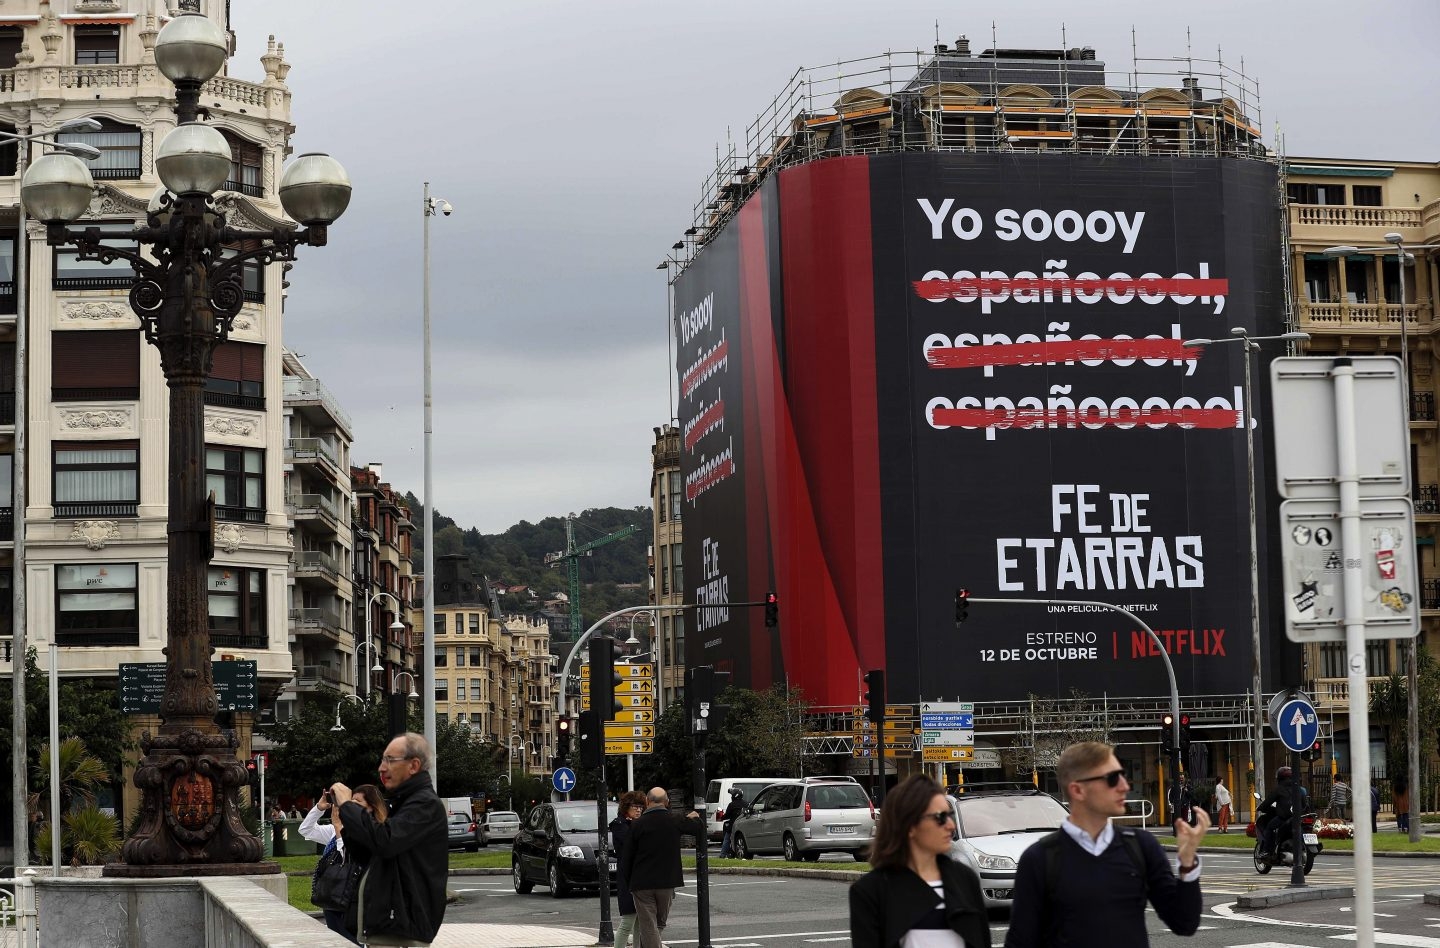 Cartel de la película Fe de etarras, producida por Netflix, en una fachada de San Sebastián.